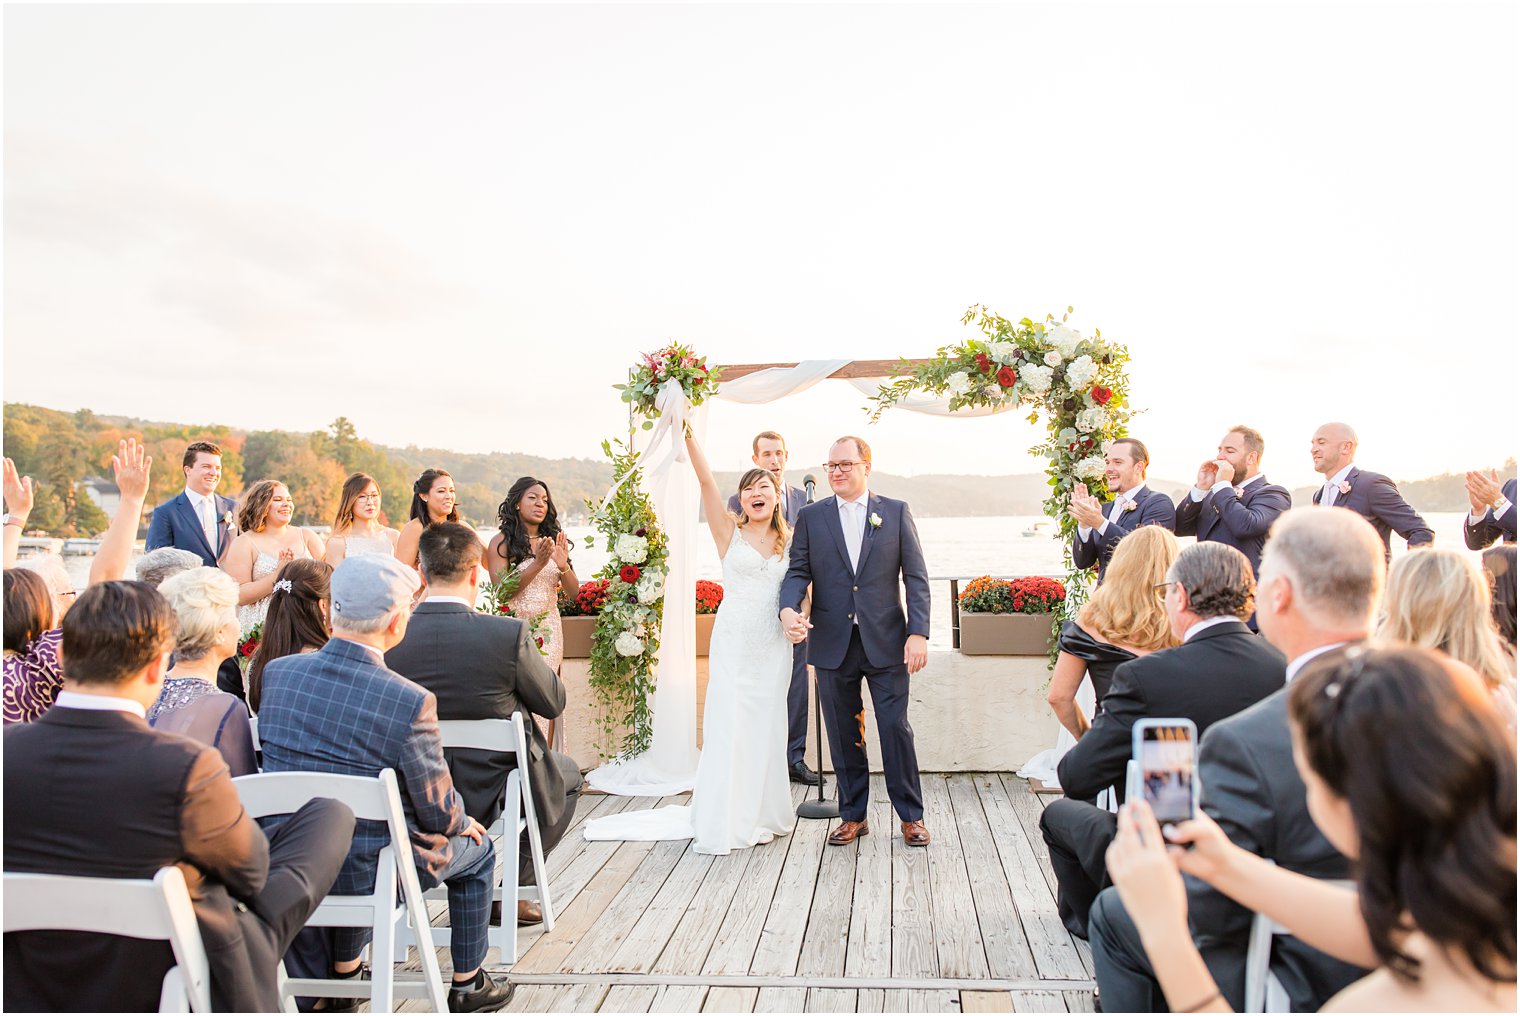 newlyweds at Lake Mohawk wedding ceremony by Idalia Photography